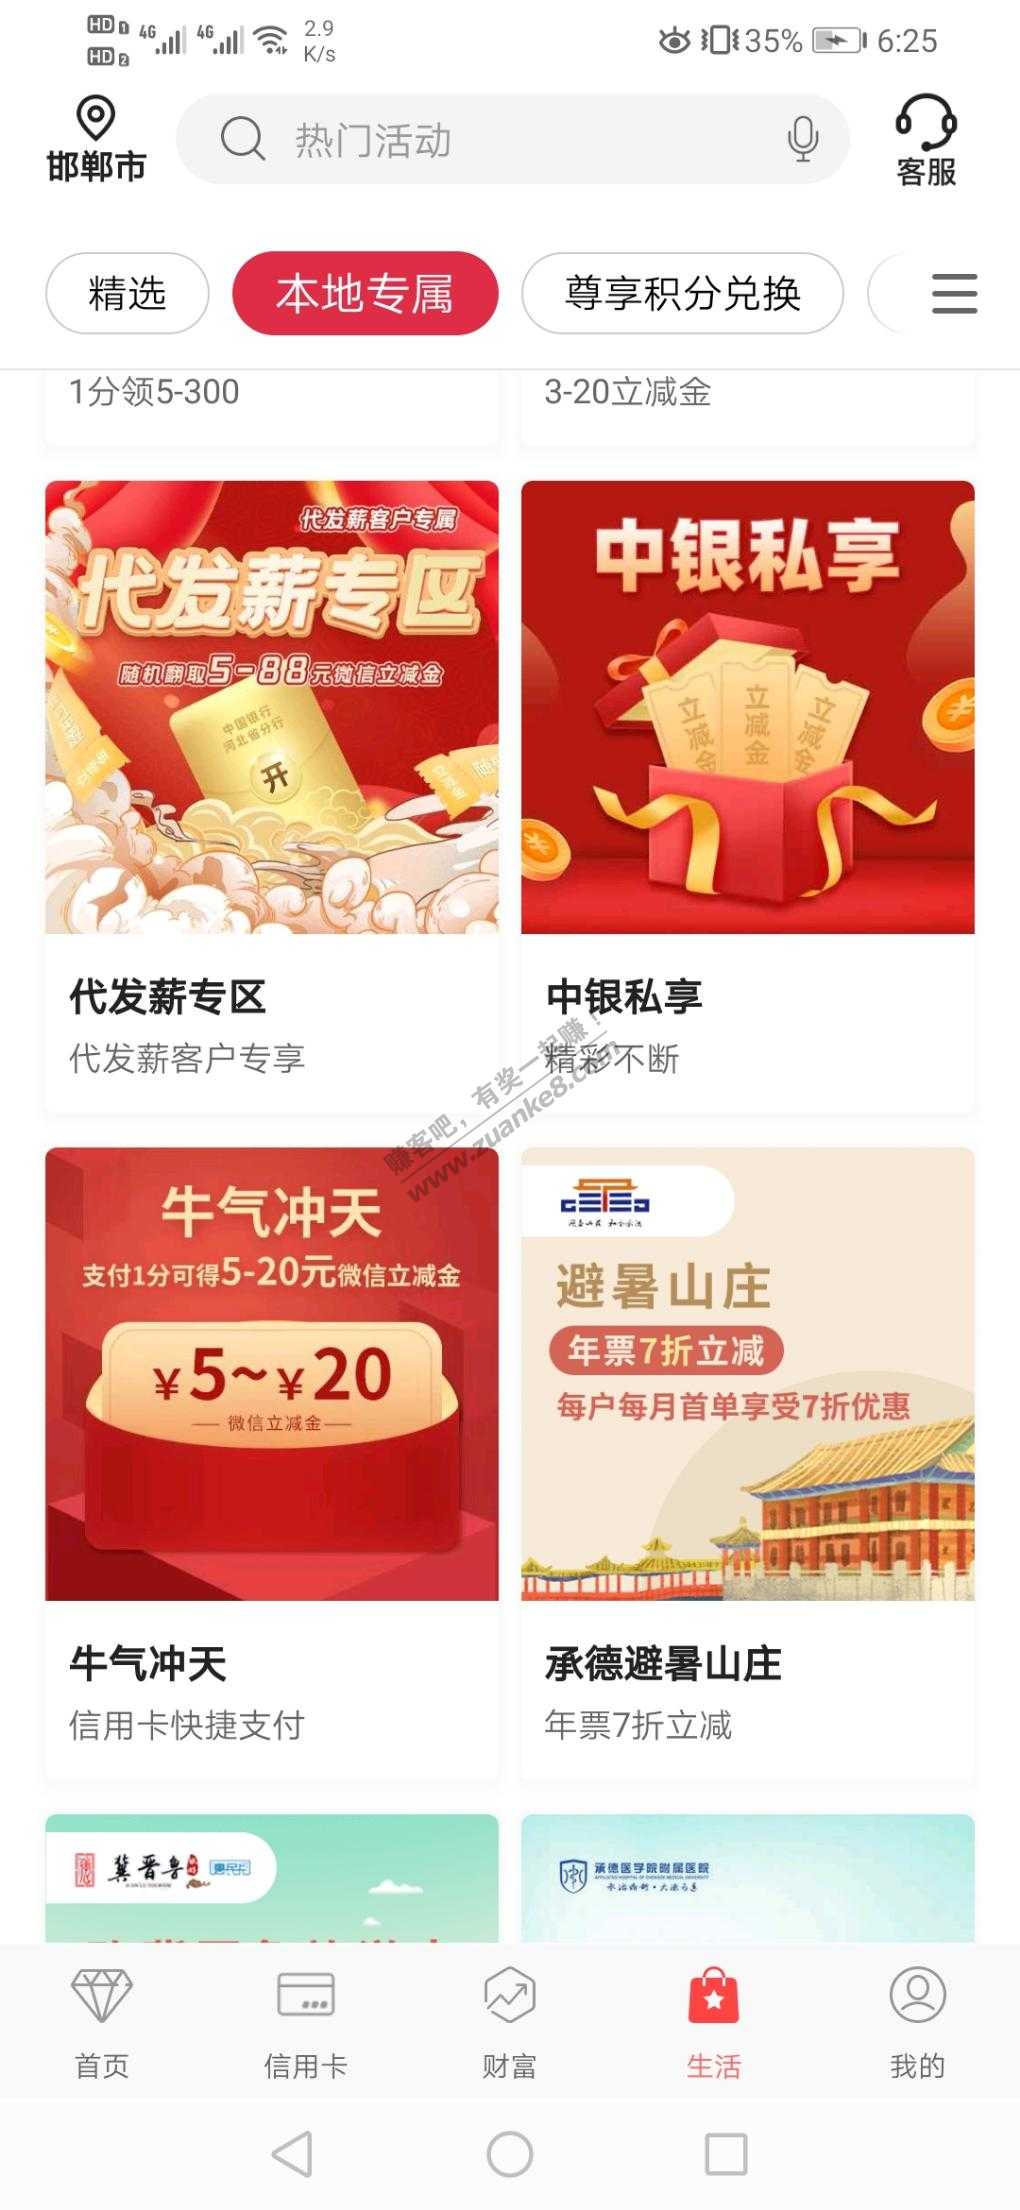 中国银行河北分行1分钱买V.x立减金-惠小助(52huixz.com)